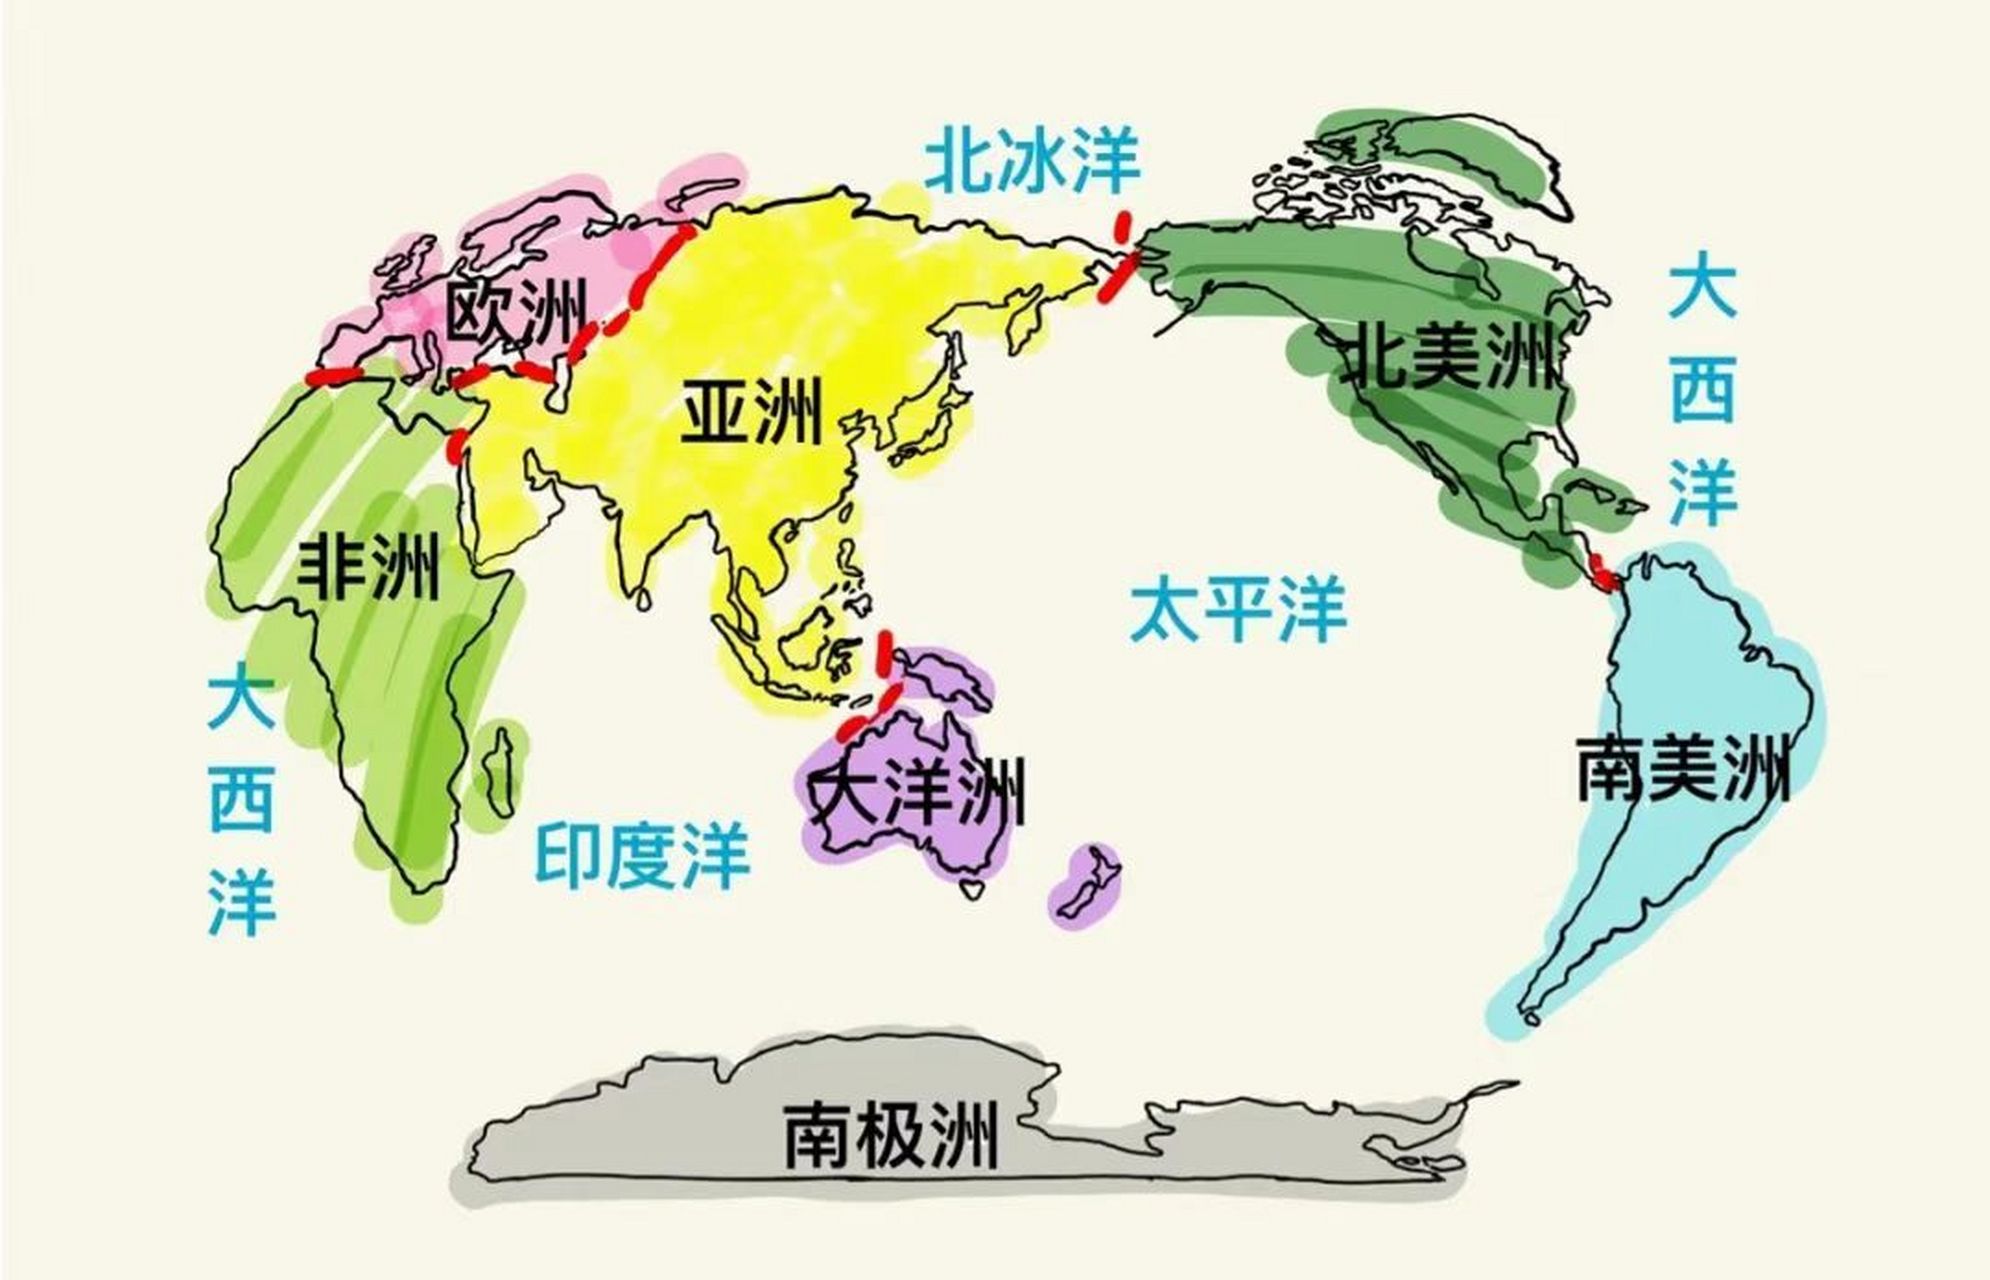 世界七大洲 世界七大洲,按面积大小分别为:亚洲asia,非洲africa,北